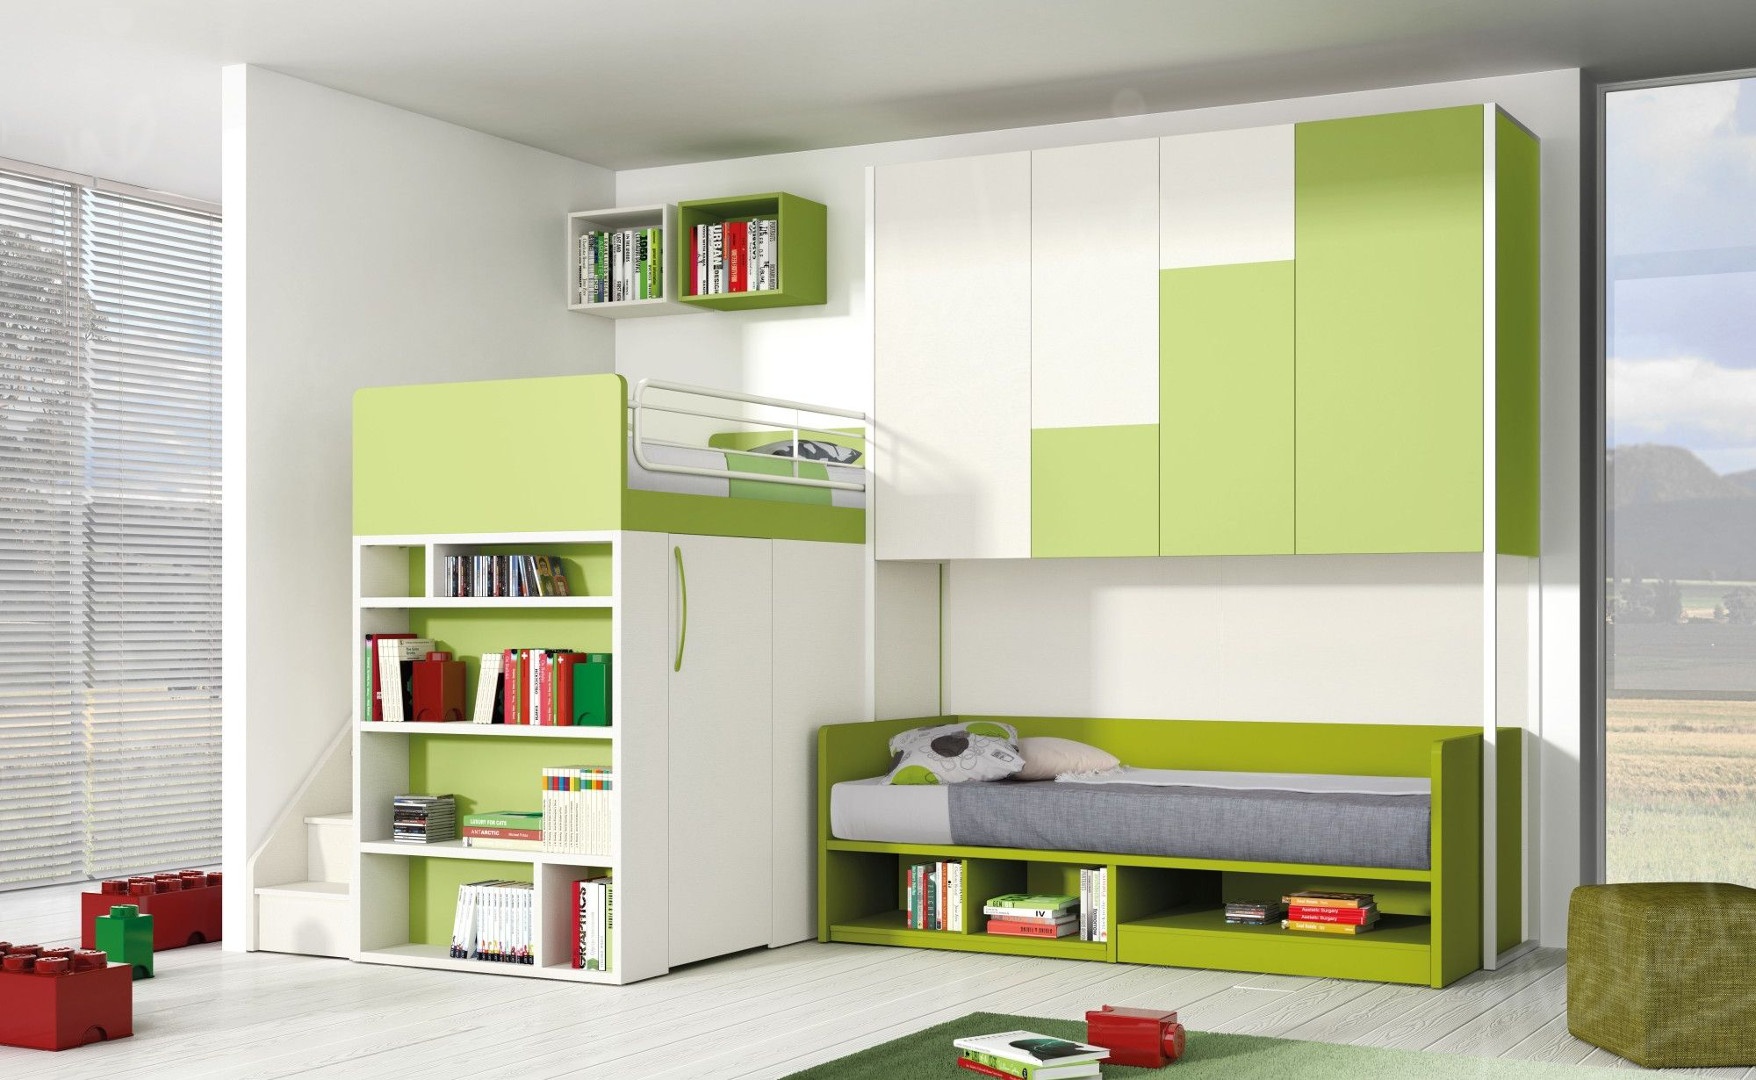 Мебель для детской комнаты в бело-зеленых оттенках Md174